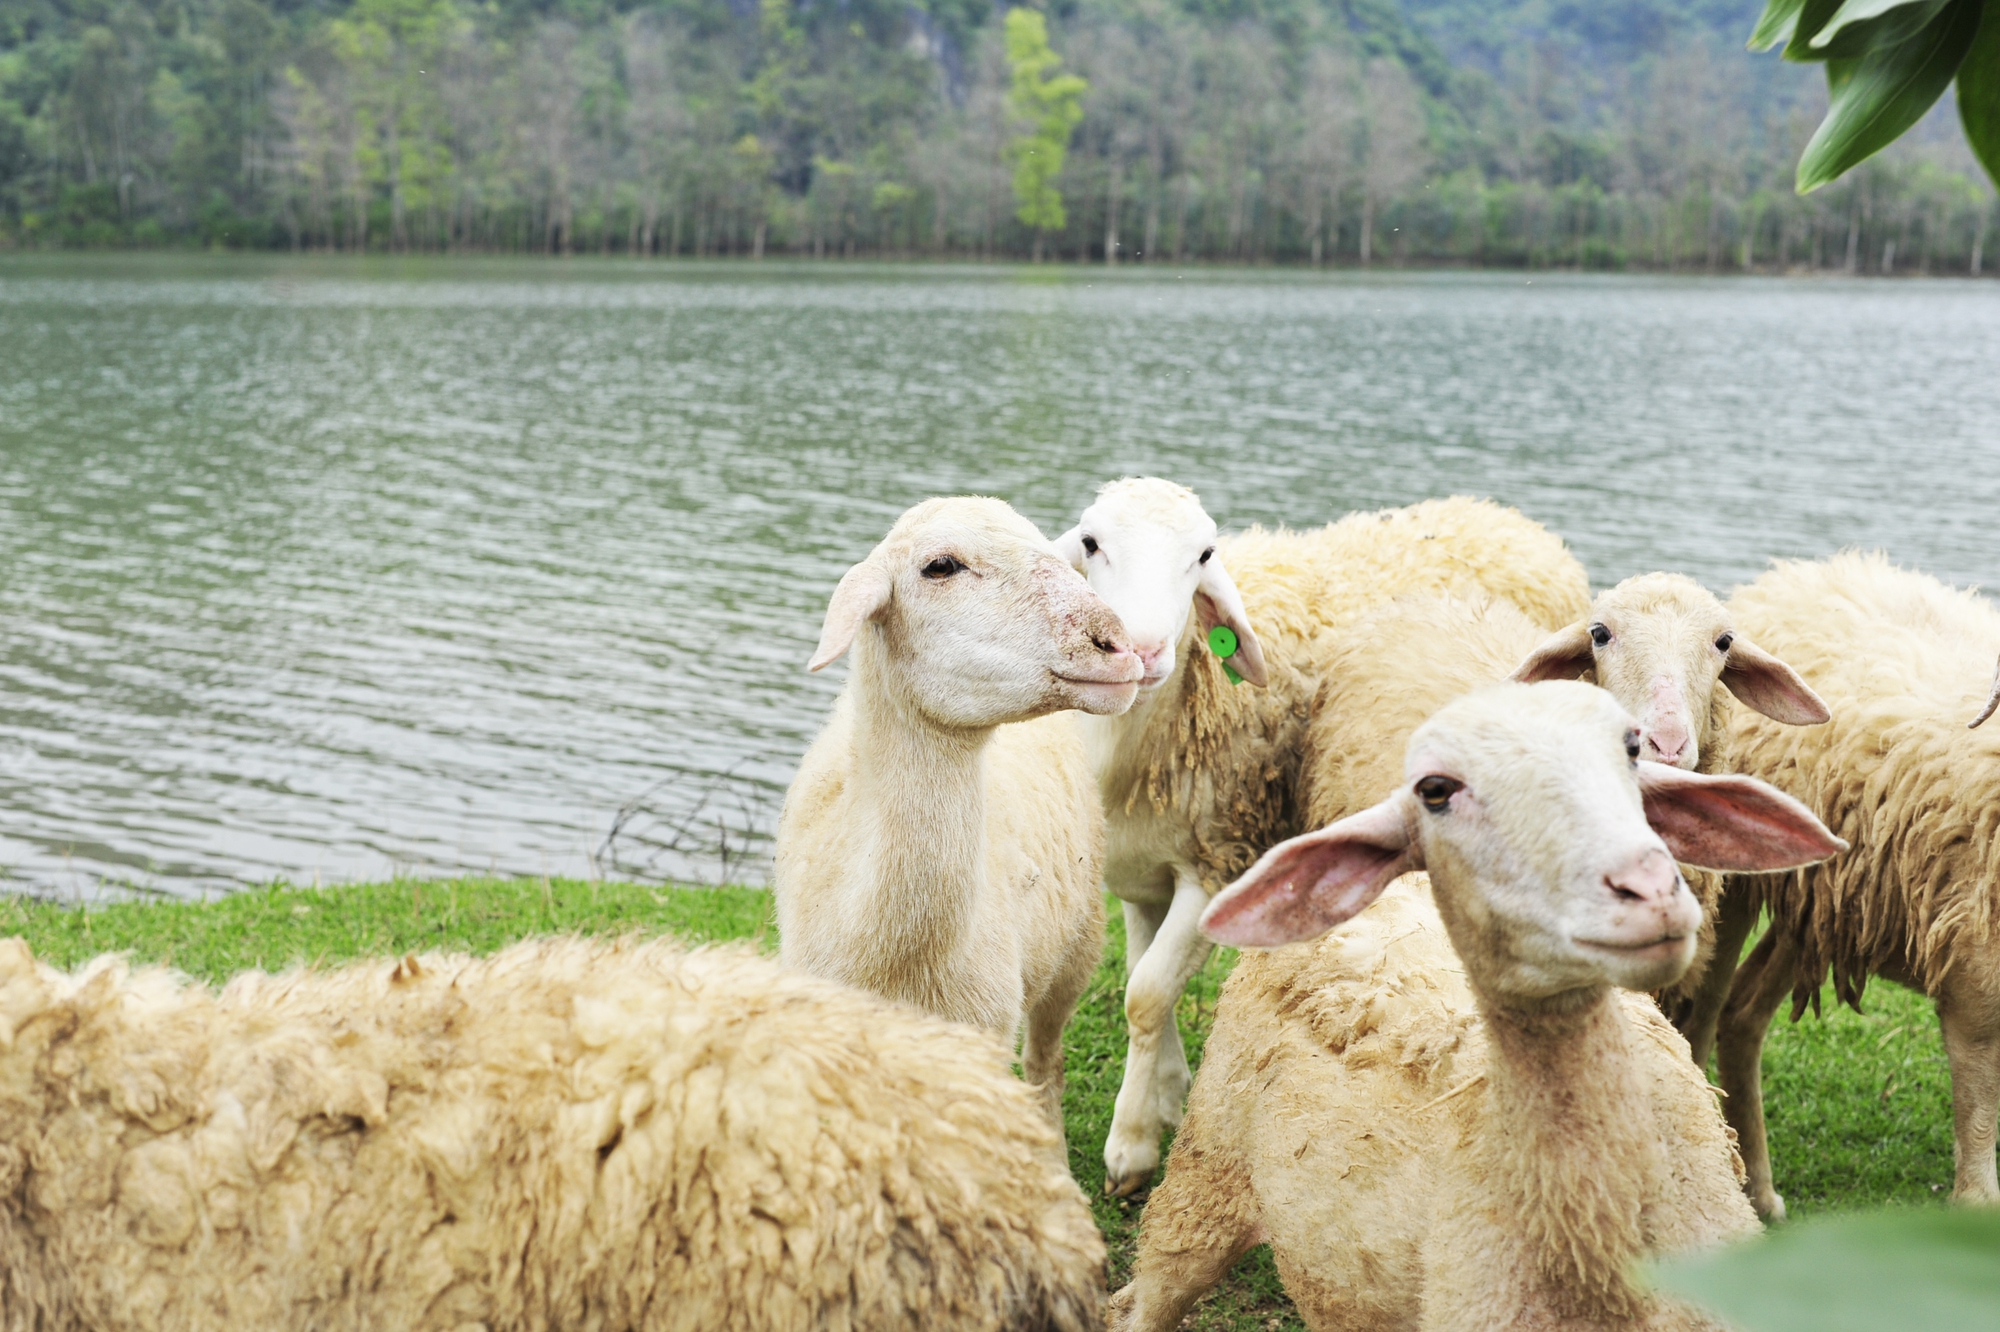 Đồng cừu Gia Hưng Ninh Bình với không gian rộng lớn và phong cảnh trữ tình